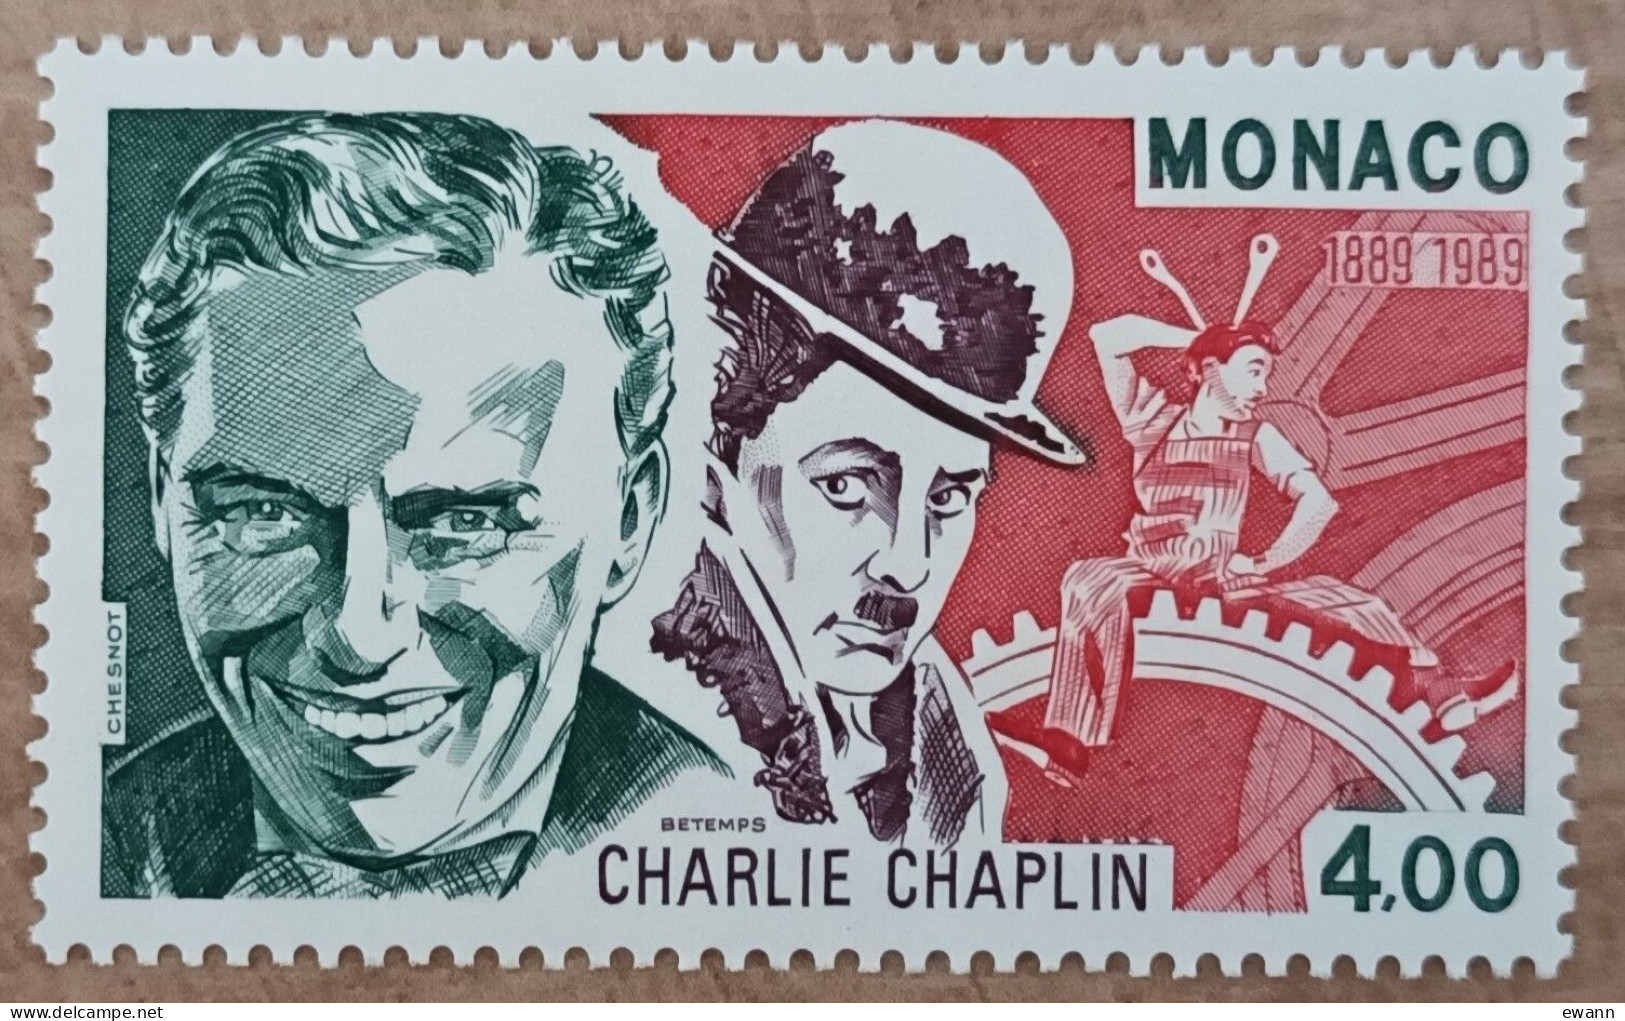 Monaco - YT N°1680 - Charlie Chaplin - 1989 - Neuf - Ongebruikt